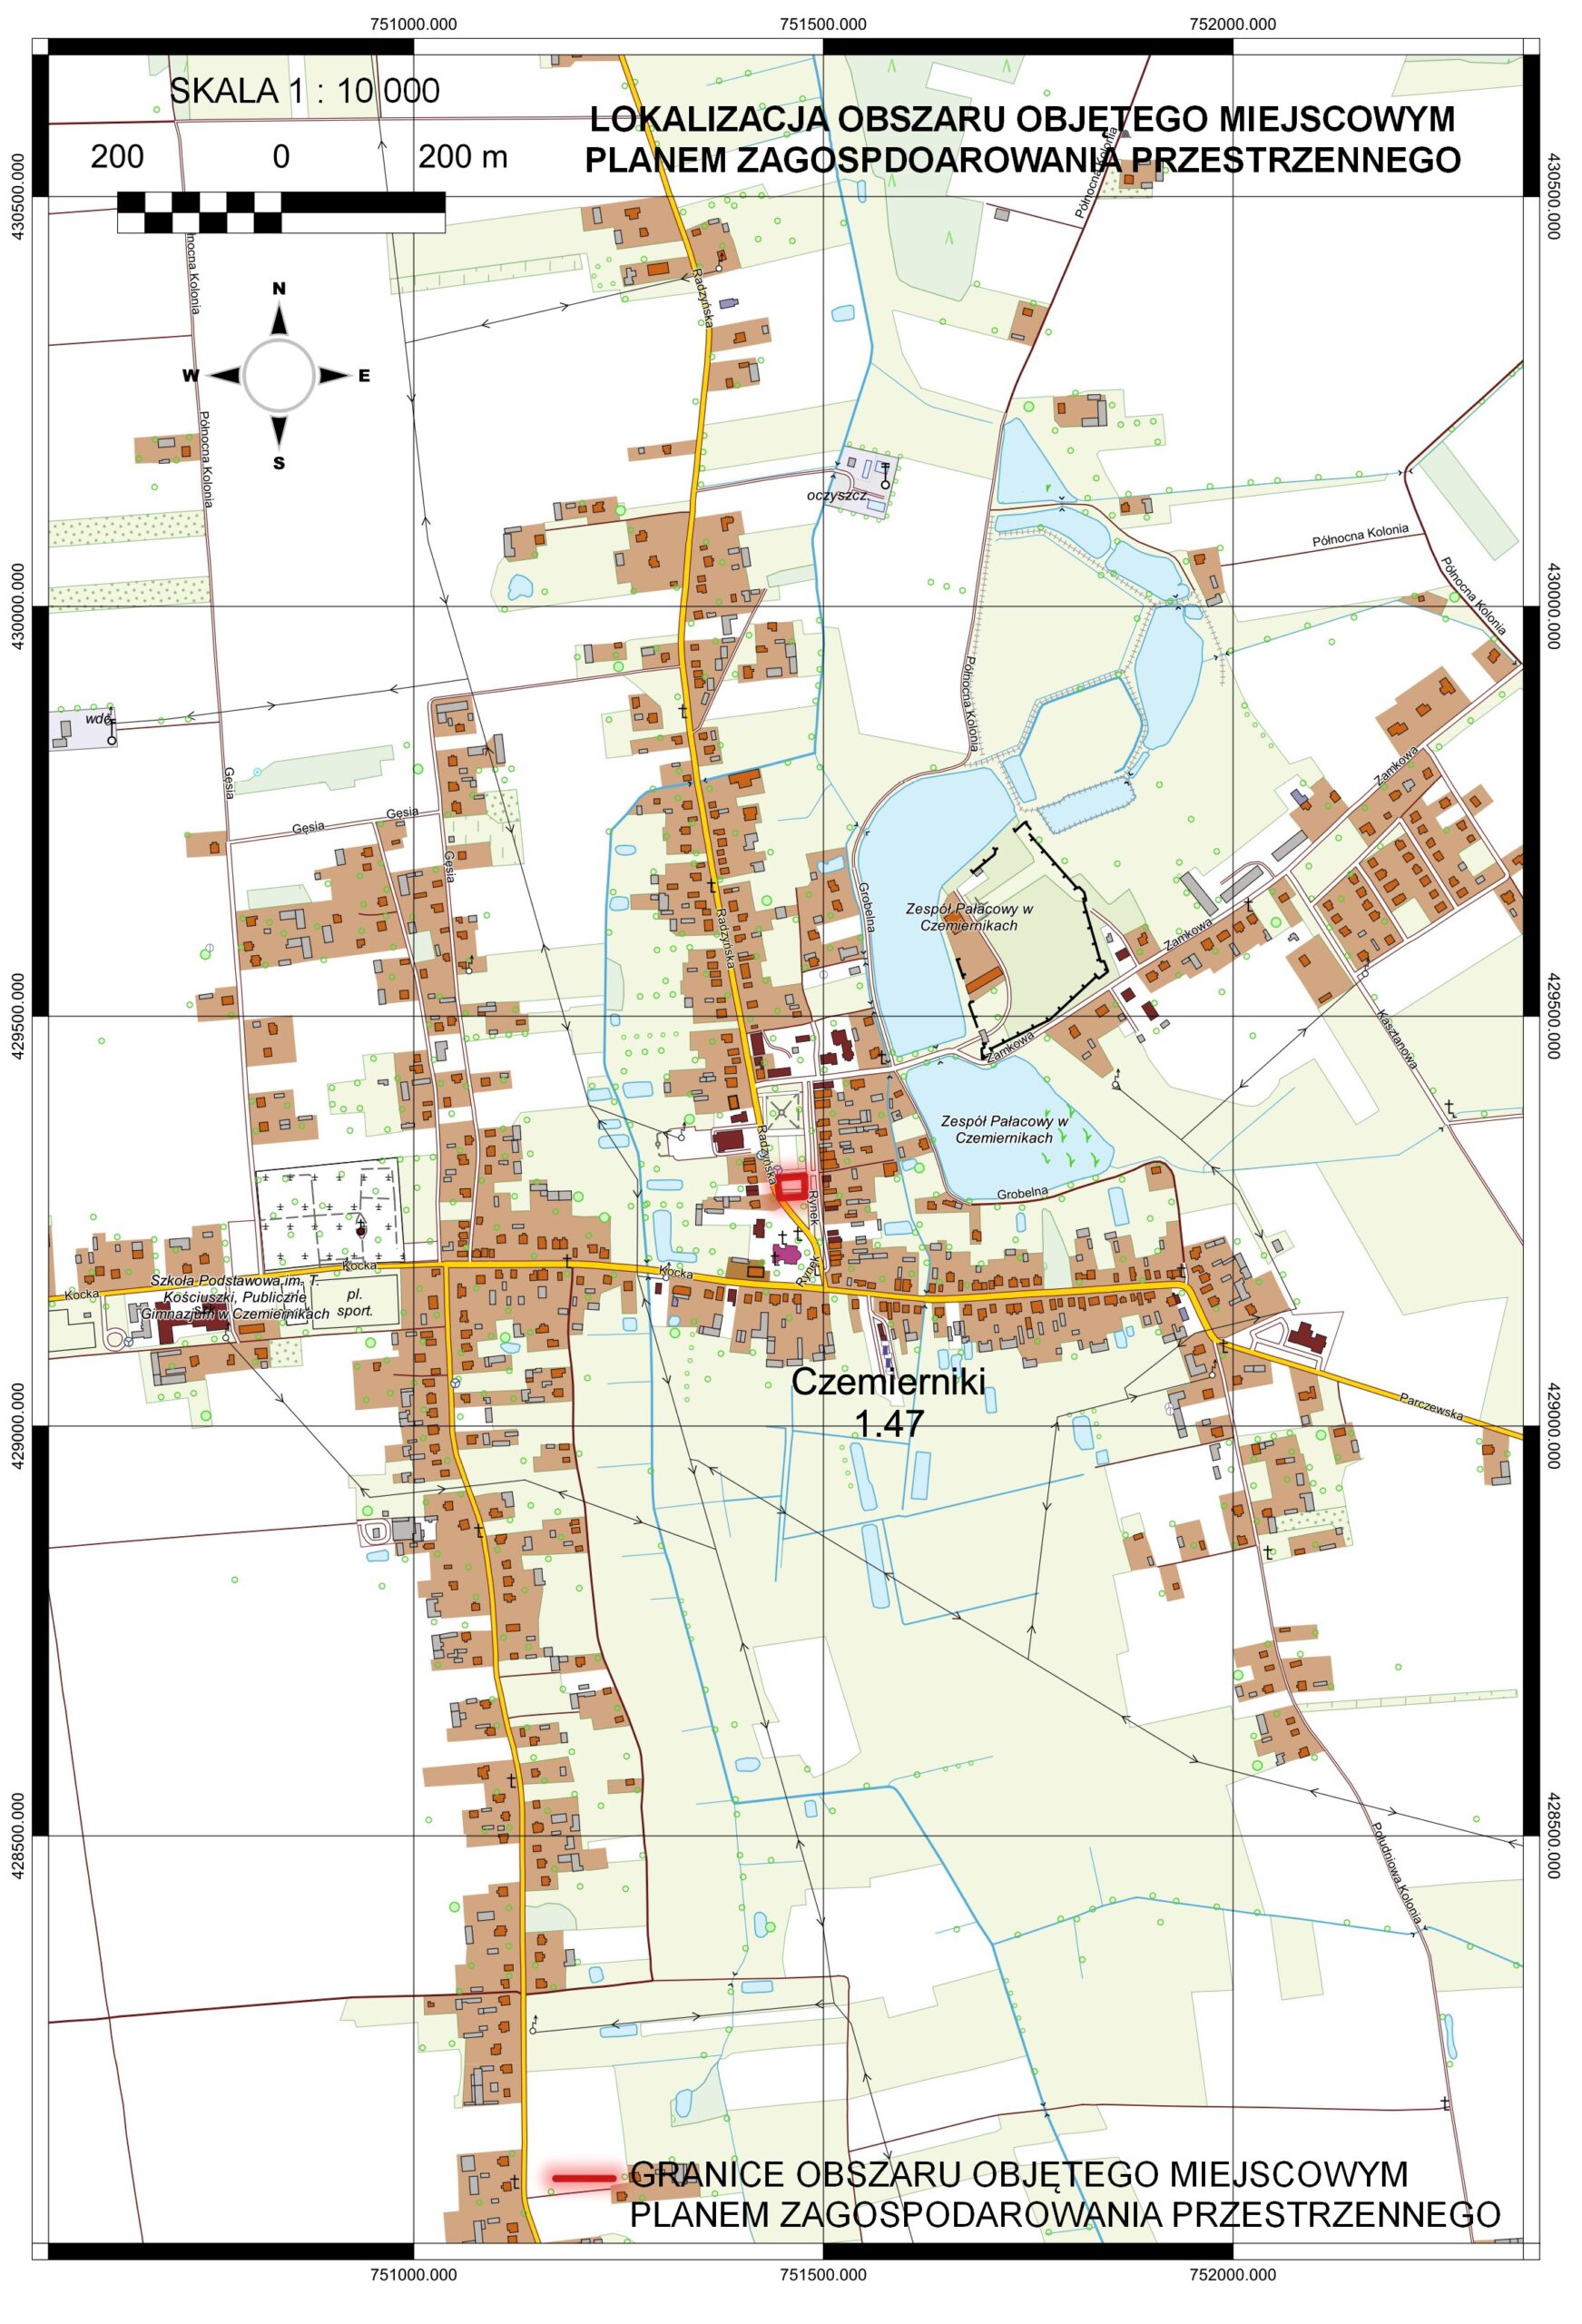 Grafika przedstawia mapę miejscowości Czemierniki z zaznaczonym obszarem objętym miejscowym planem zagospodarowania